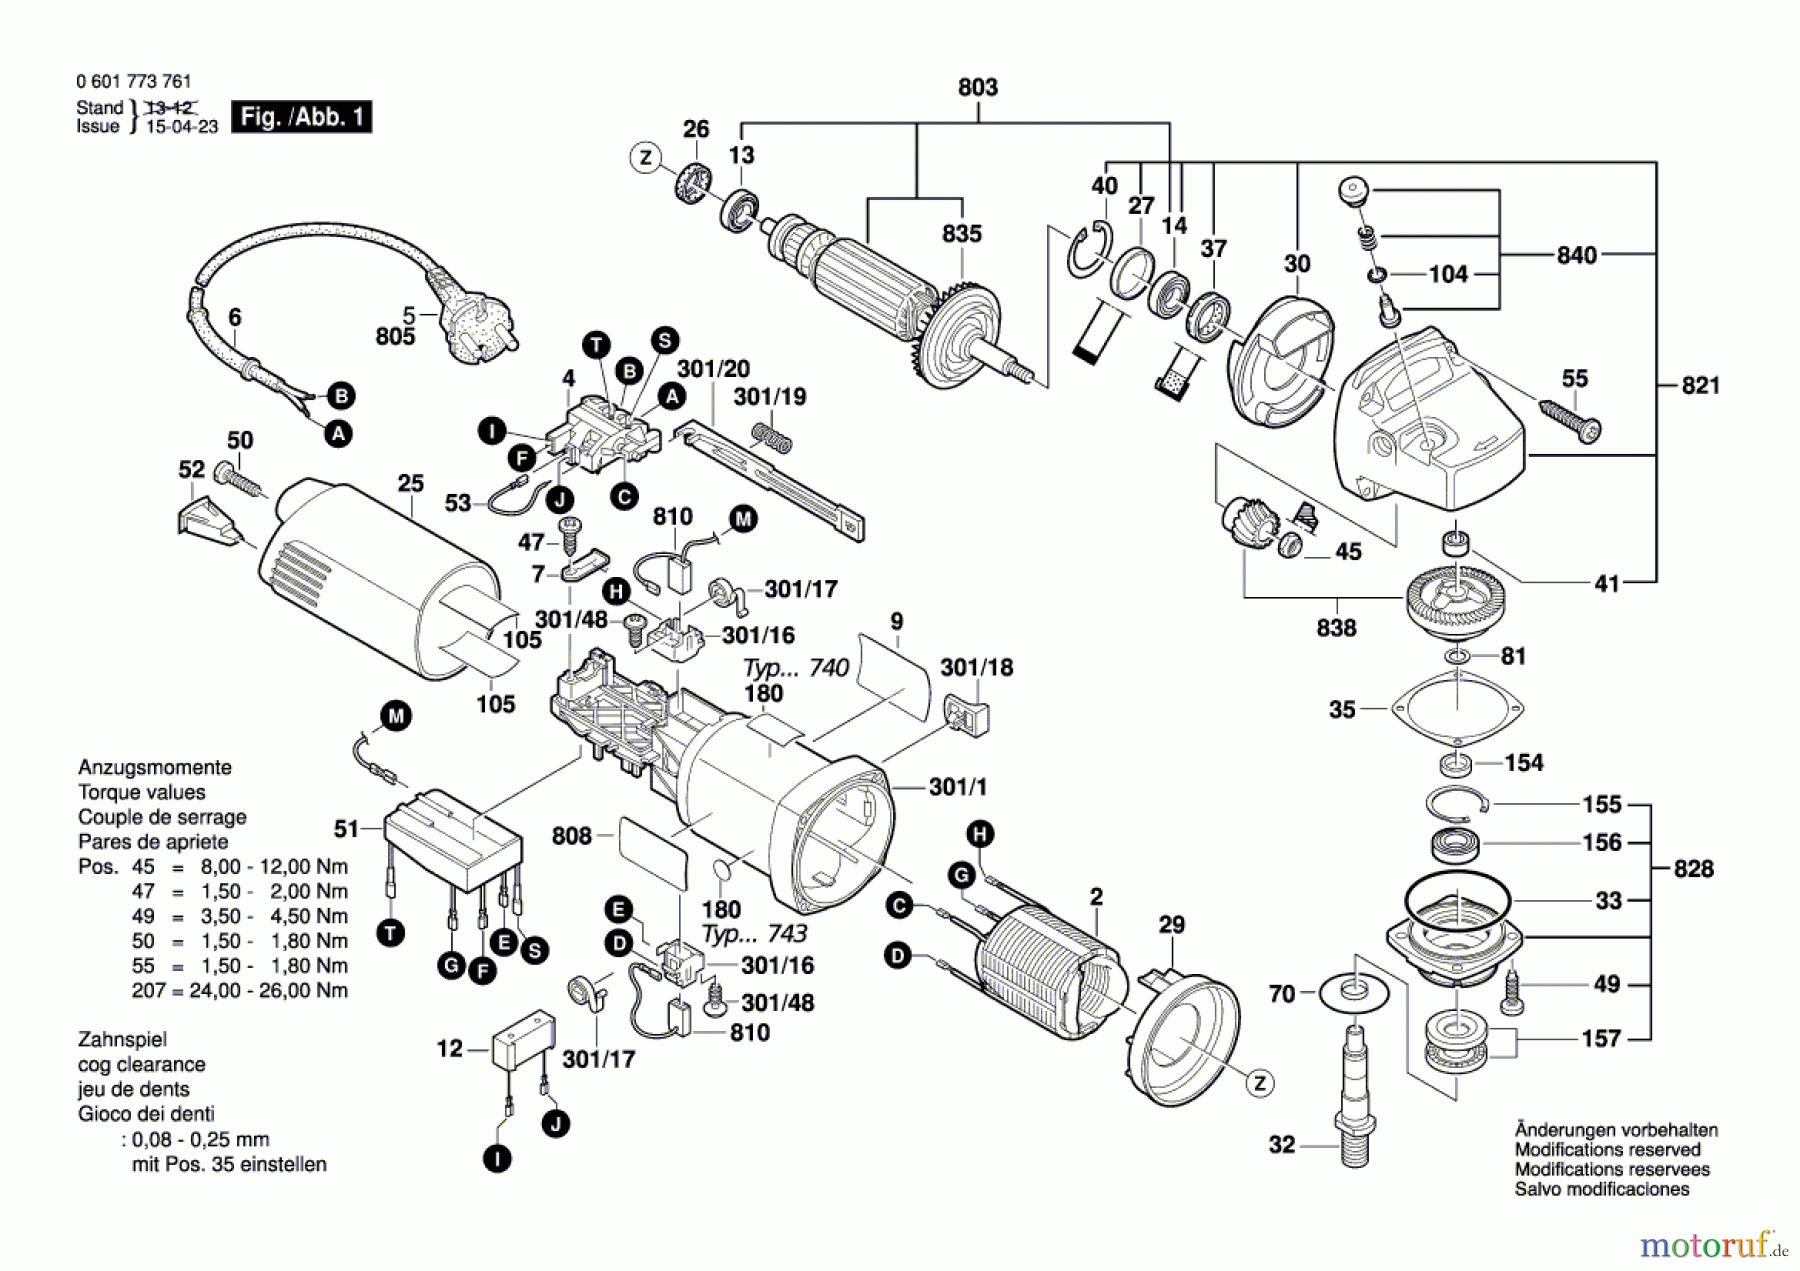  Bosch Werkzeug Betonschleifer GBR 14 C Seite 1